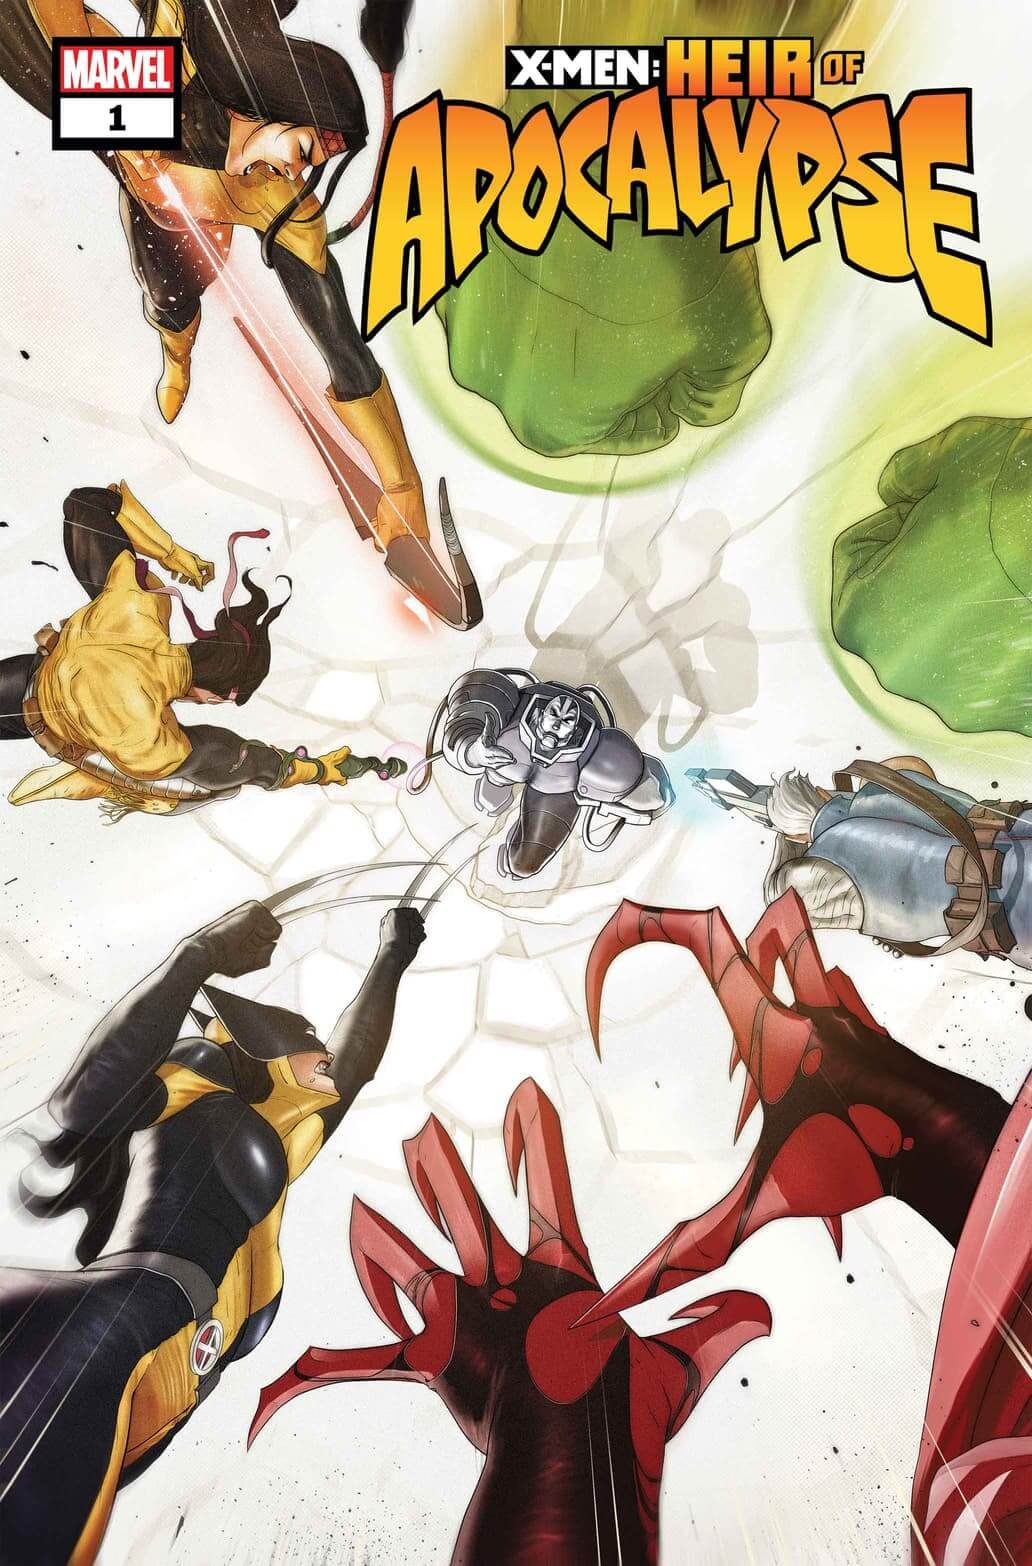 Couverture de X-Men : L'Héritier d'Apocalypse 1 par Dotun Akande